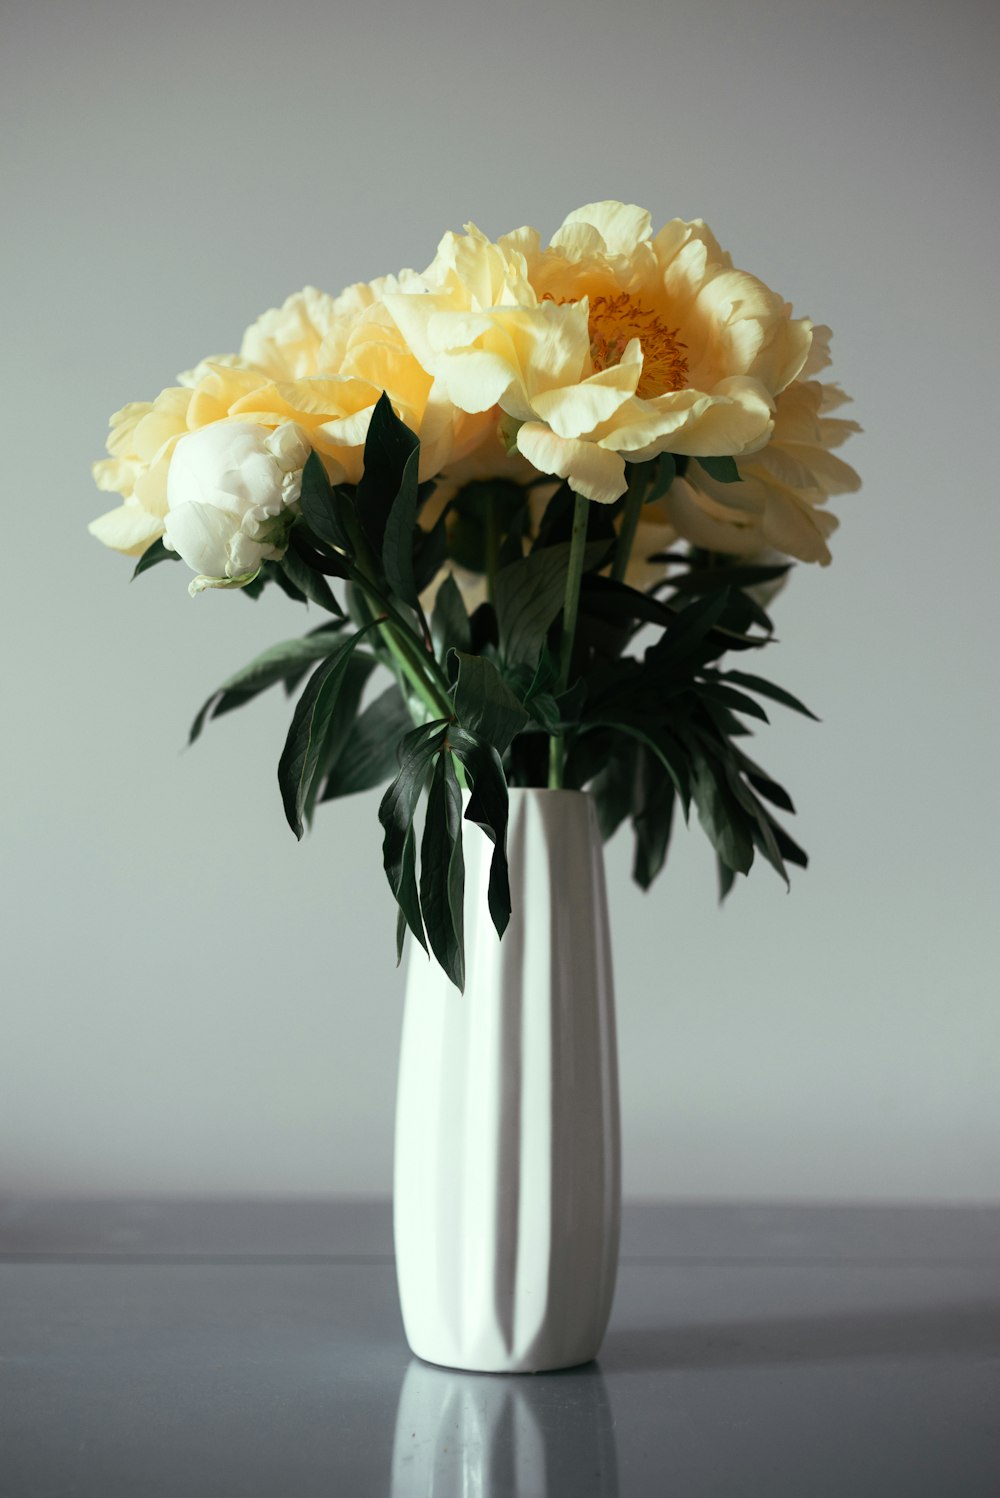 un vase blanc rempli de fleurs jaunes et blanches